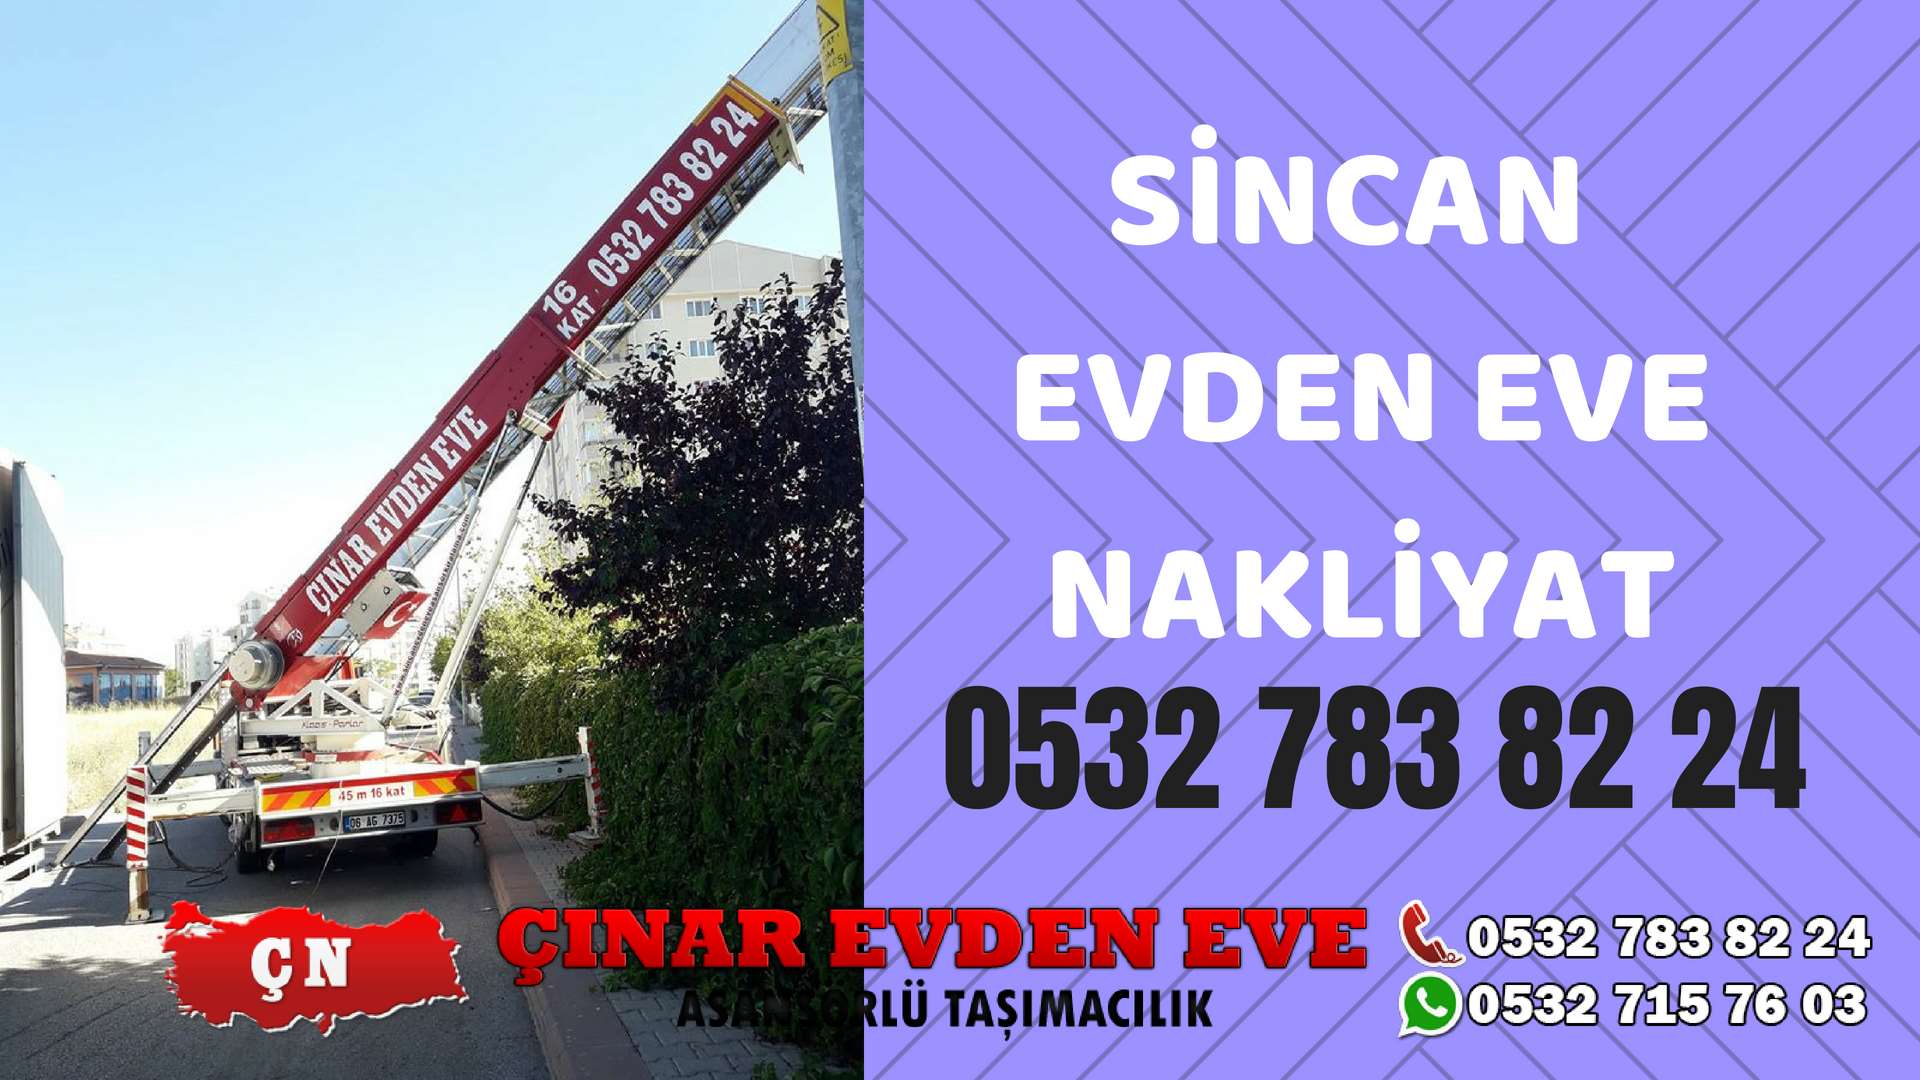 Ankara Beypazarı Sincan Evden Eve Nakliyat, Asansörlü Taşıma Çınar Nakliyat Sincan 0532 715 76 03